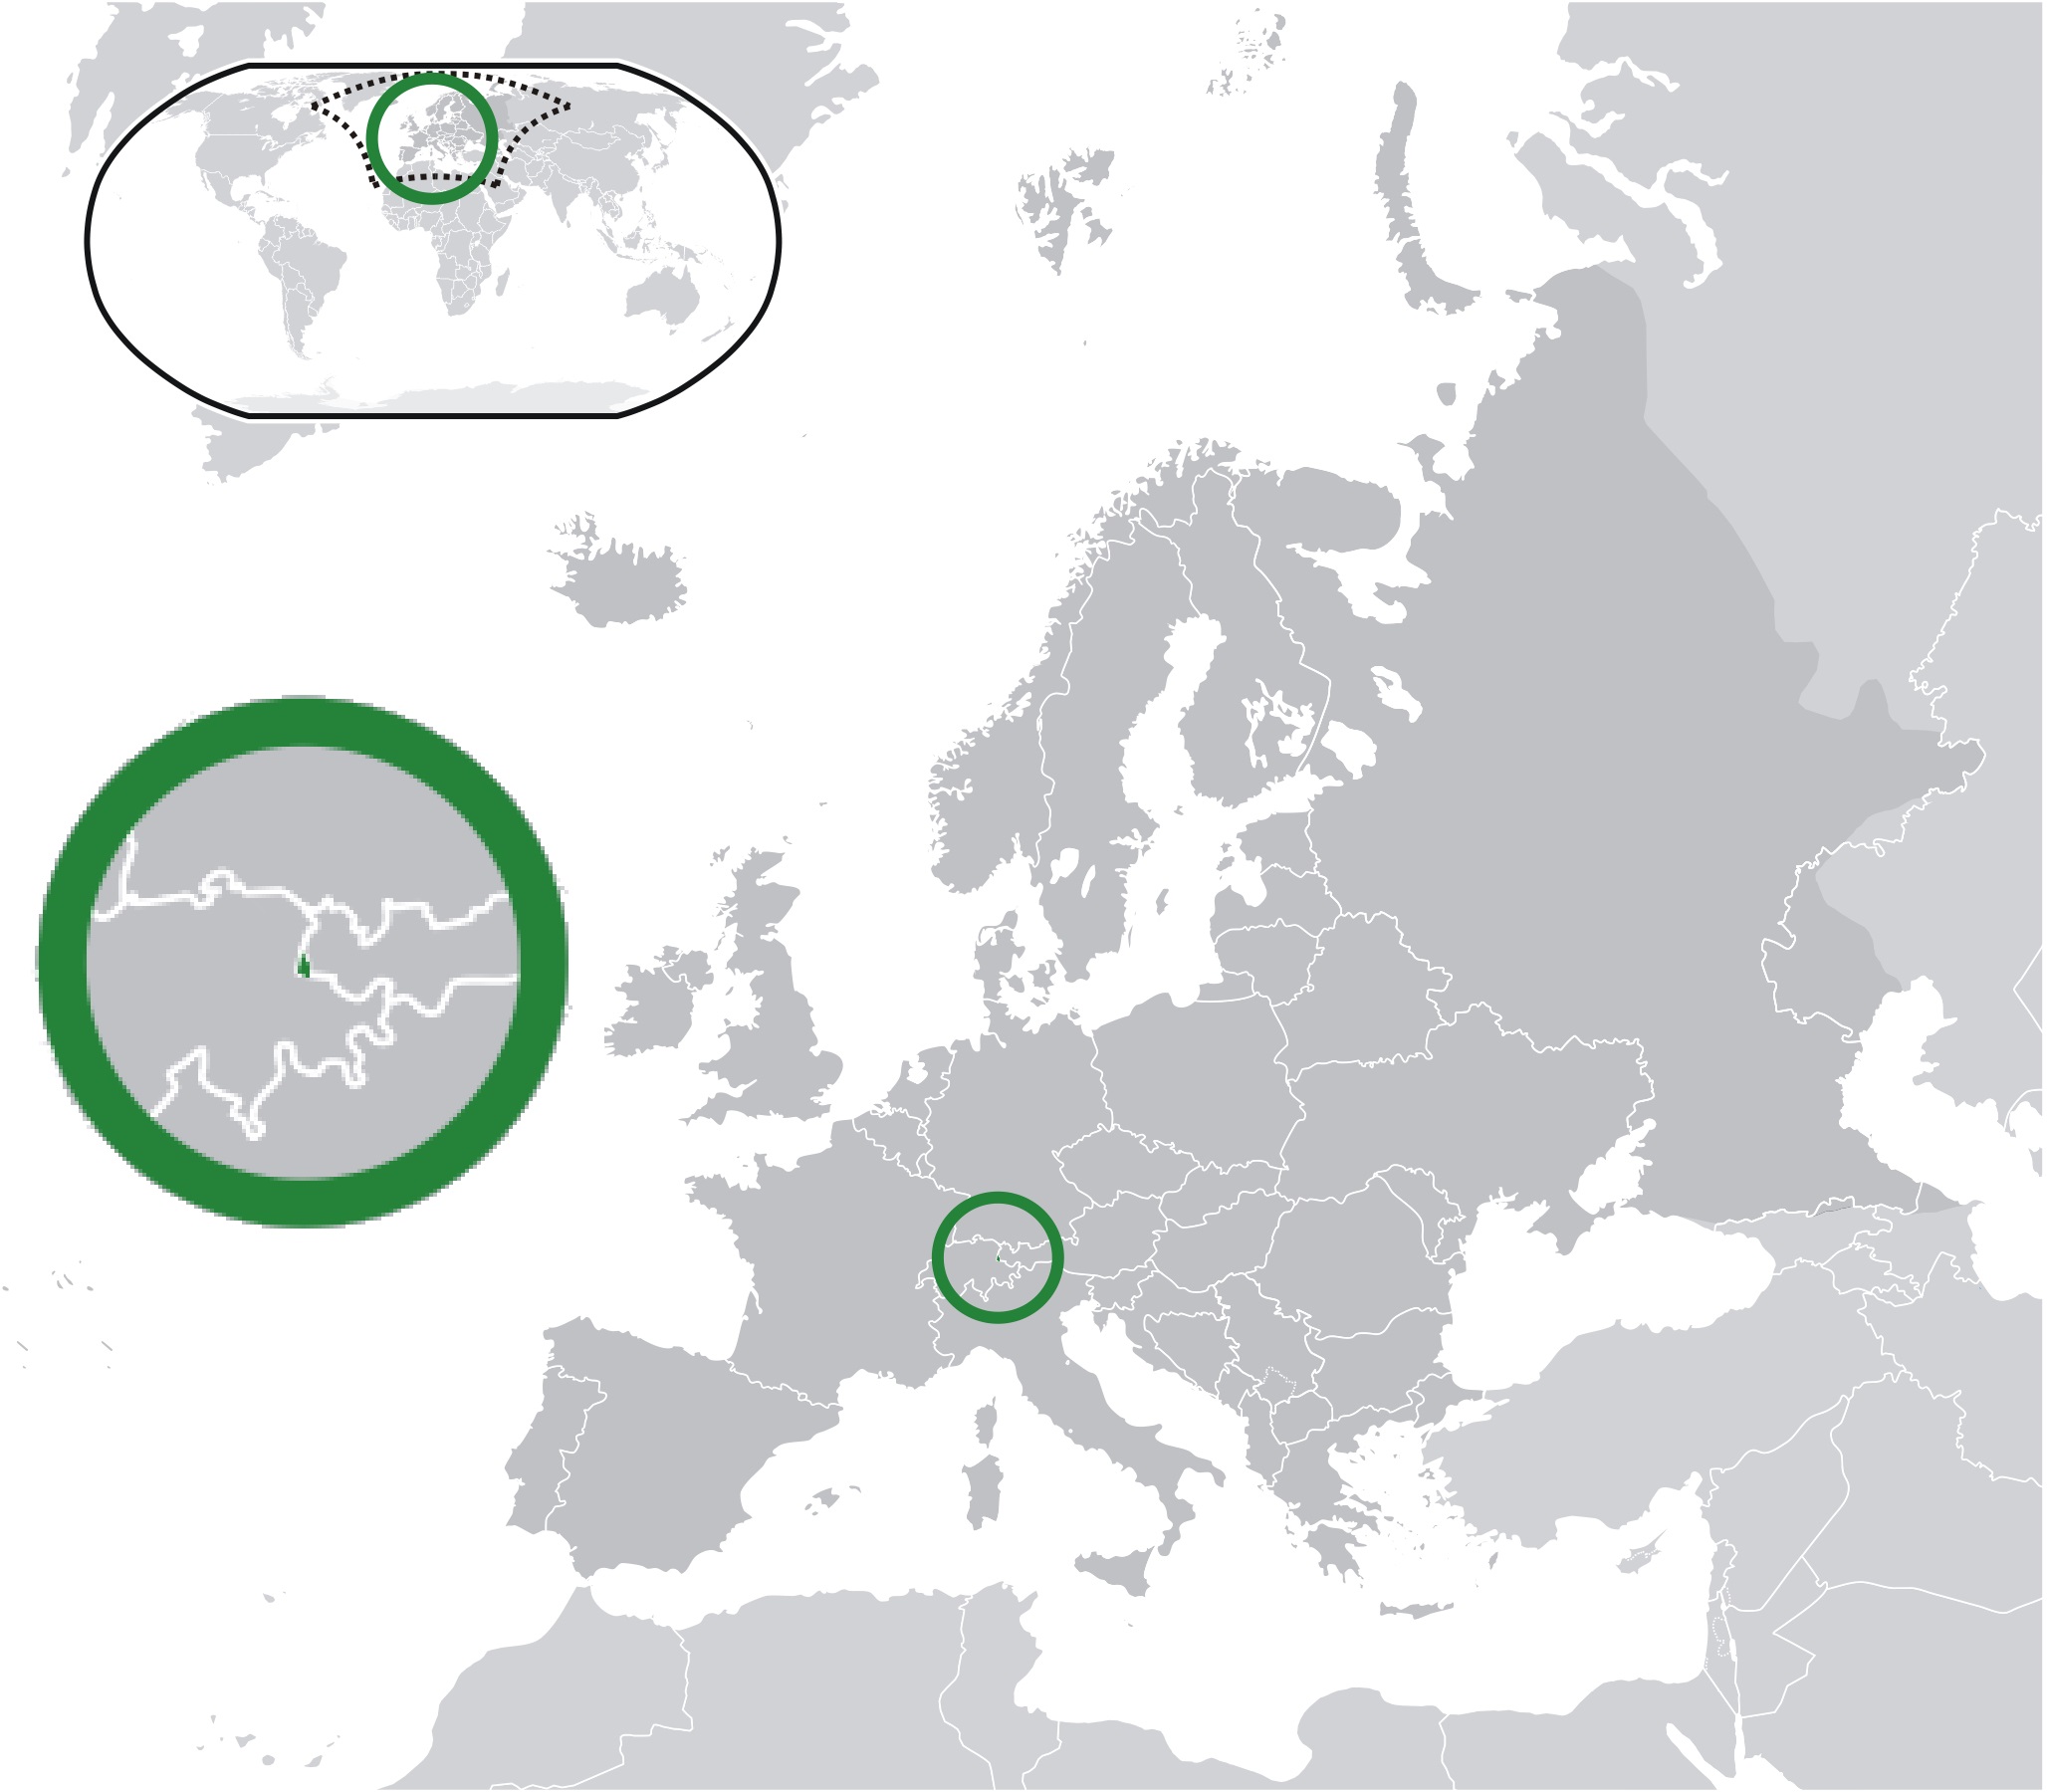 लिच्टेन्स्टाईन् : लिच्टेन्स्टाईन् नावाचा युरोपातला एक देश हा केवळ १६० चौरस किलोमीटर एवढय़ाच क्षेत्रफळाचा आहे. हा छोटासा देश ऑस्ट्रिया आणि स्वित्झर्लंड या इतर दोन देशांच्या मधोमध वसलेला आहे आणि जगातल्या सर्वात छोटय़ा सहा देशांपैकी तो एक आहे.